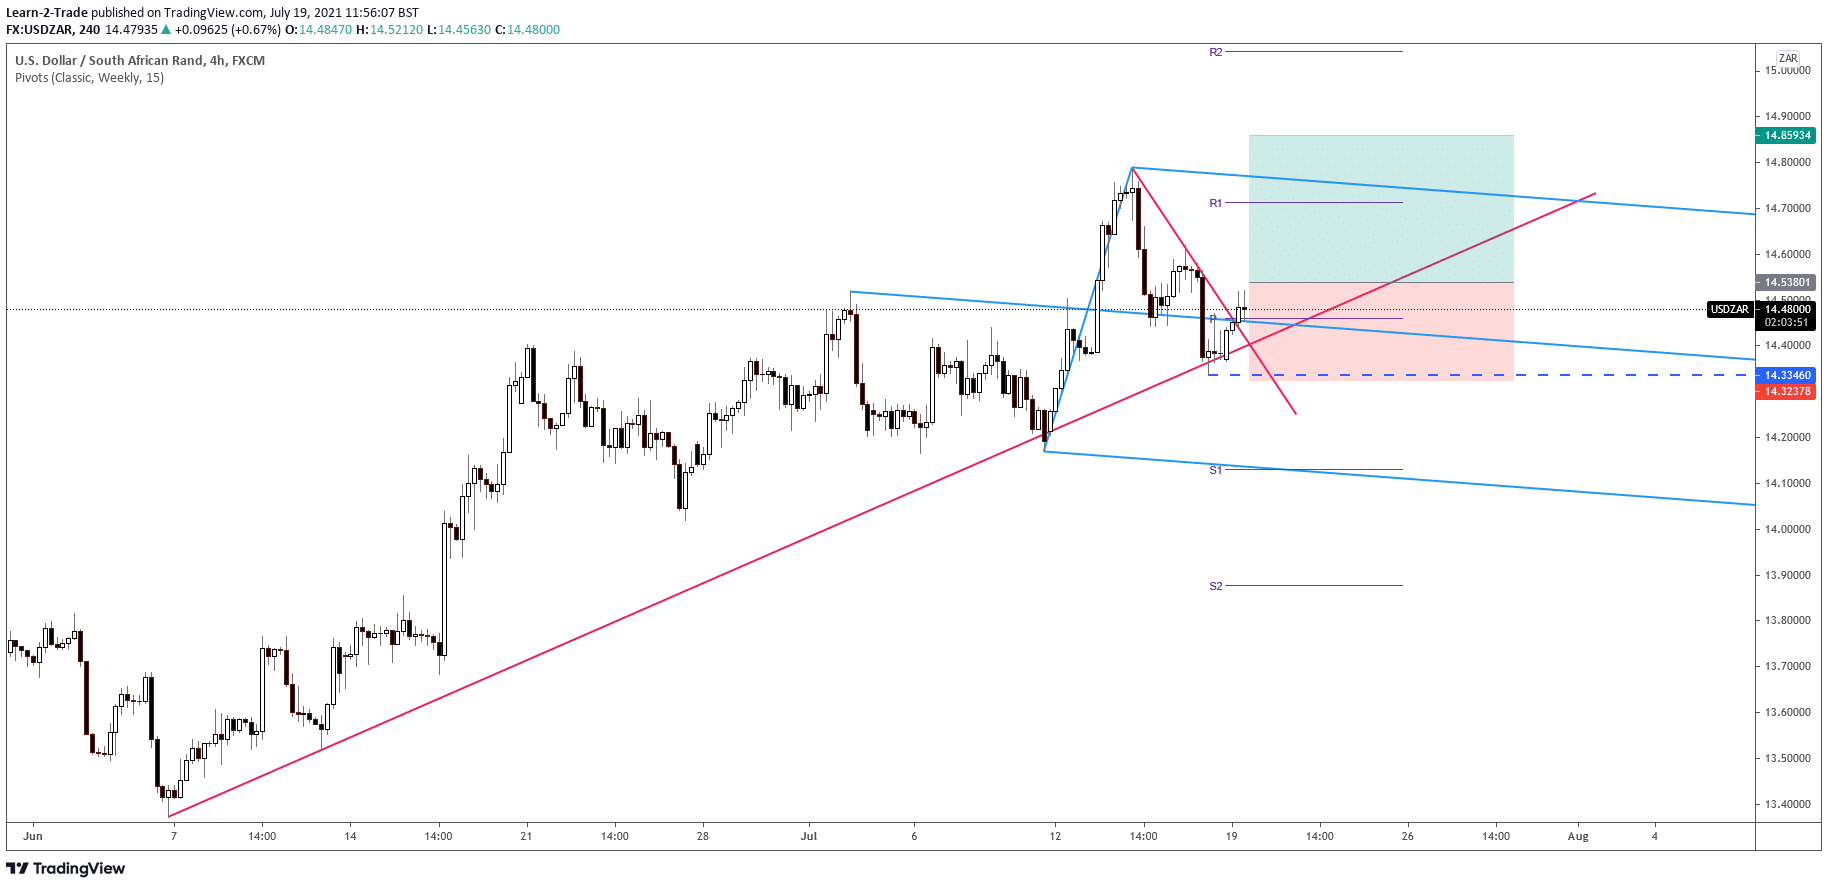 USD/ZAR signal on 4-hour chart